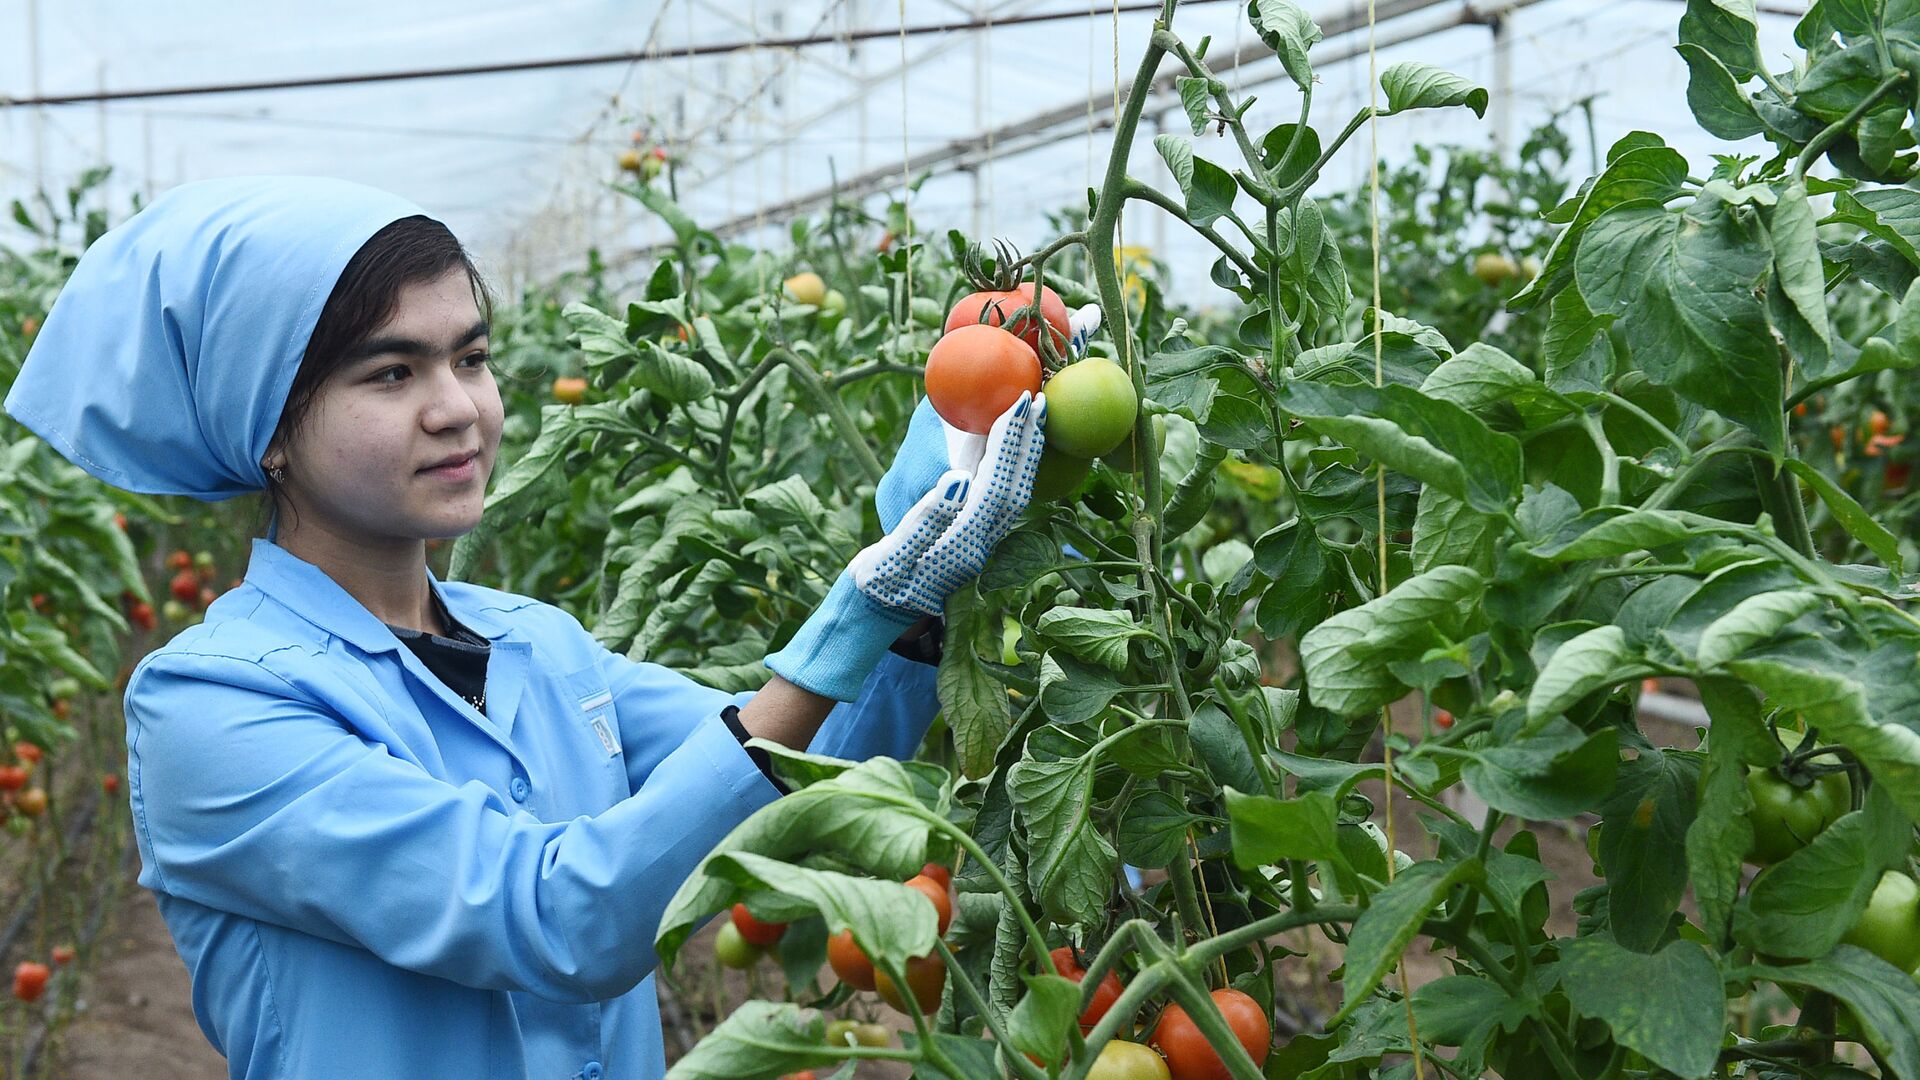 Выращивание помидоров в теплице - Sputnik Таджикистан, 1920, 24.04.2021